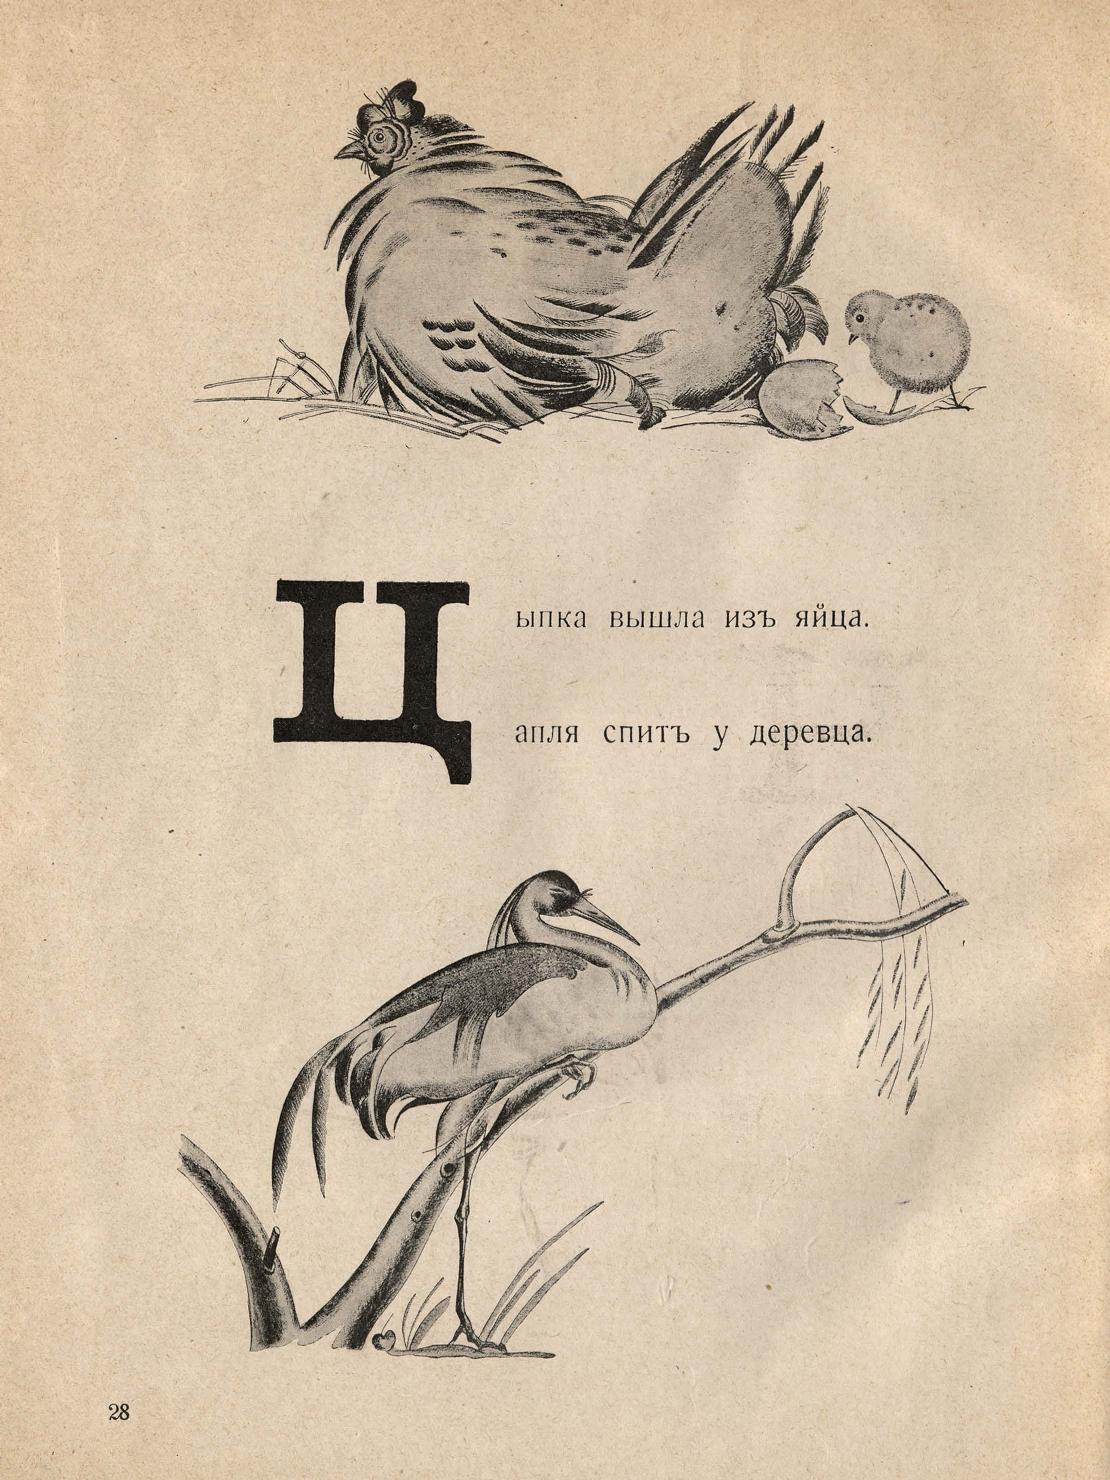 1926. Саша Черный. Живая азбука. Рисовал Ф. Рожанковский. Париж 